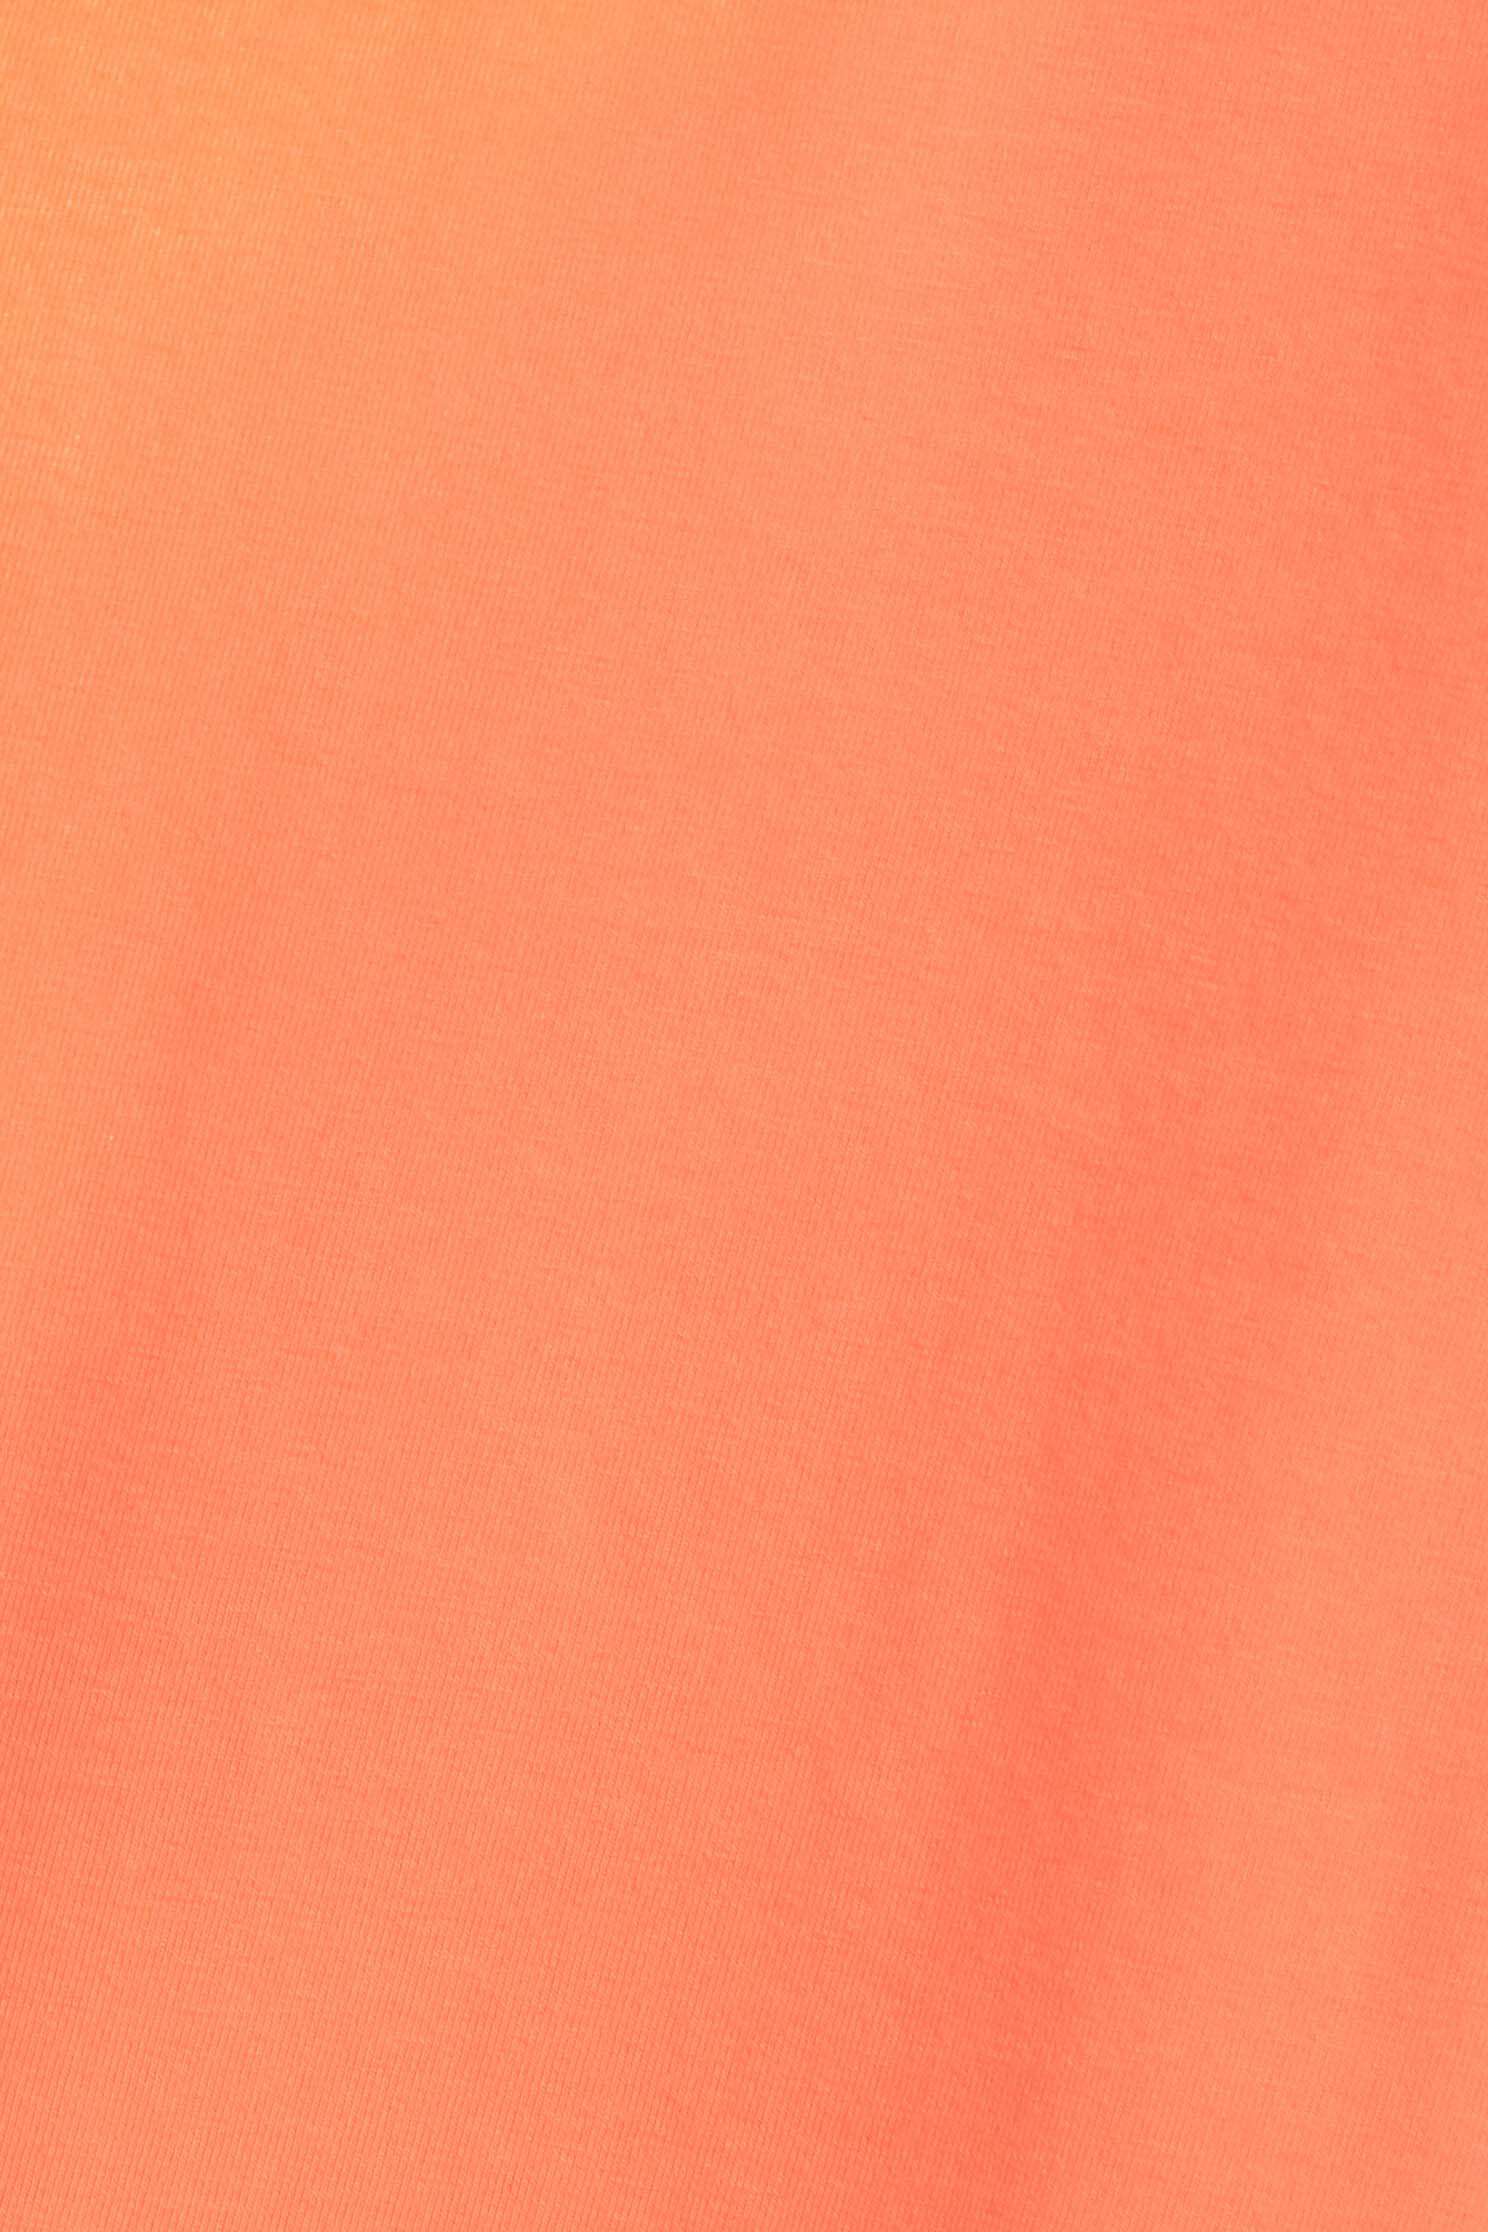 橘色刺繡崁針珠T恤,短袖 t恤,圓領 t恤,刺繡 t恤橘色刺繡崁針珠T恤,T-Shirt,T恤,上衣,刺繡,母親節專區,珍珠,秋冬穿搭,舒適主義,蕾絲